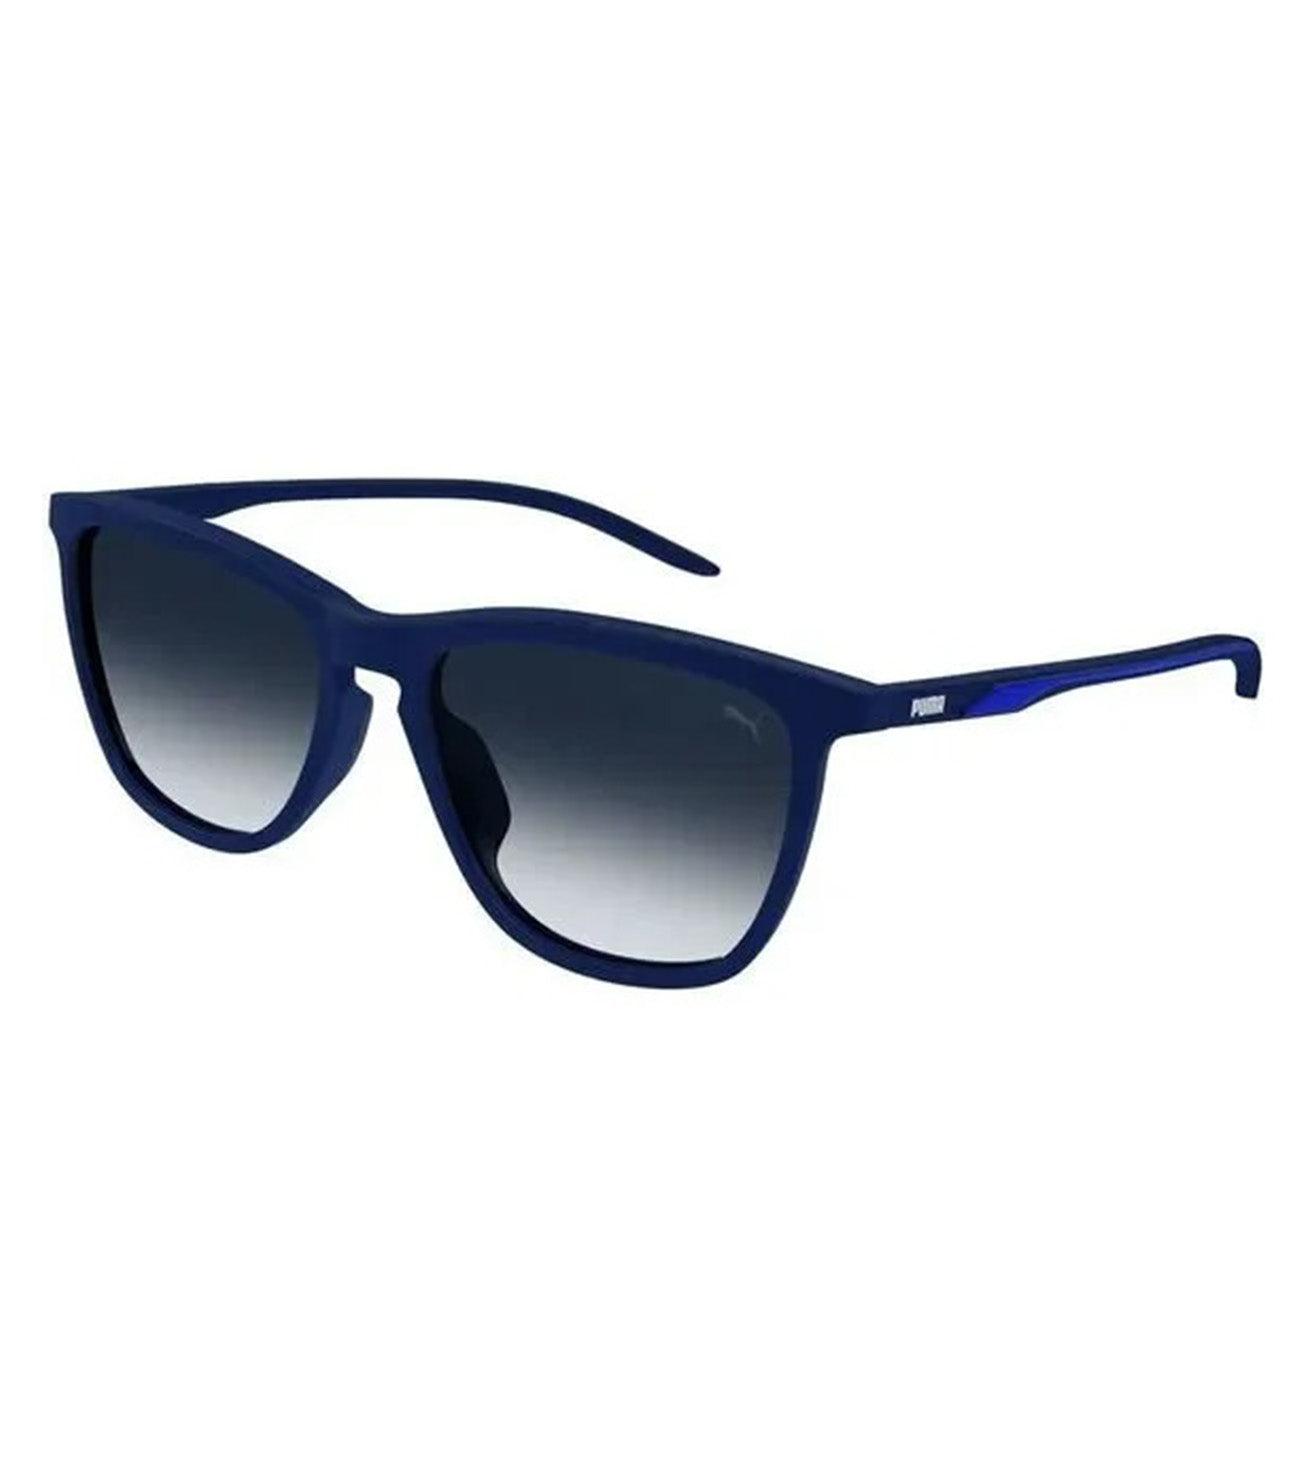 Puma Men's Blue Wayfarer Sunglasses